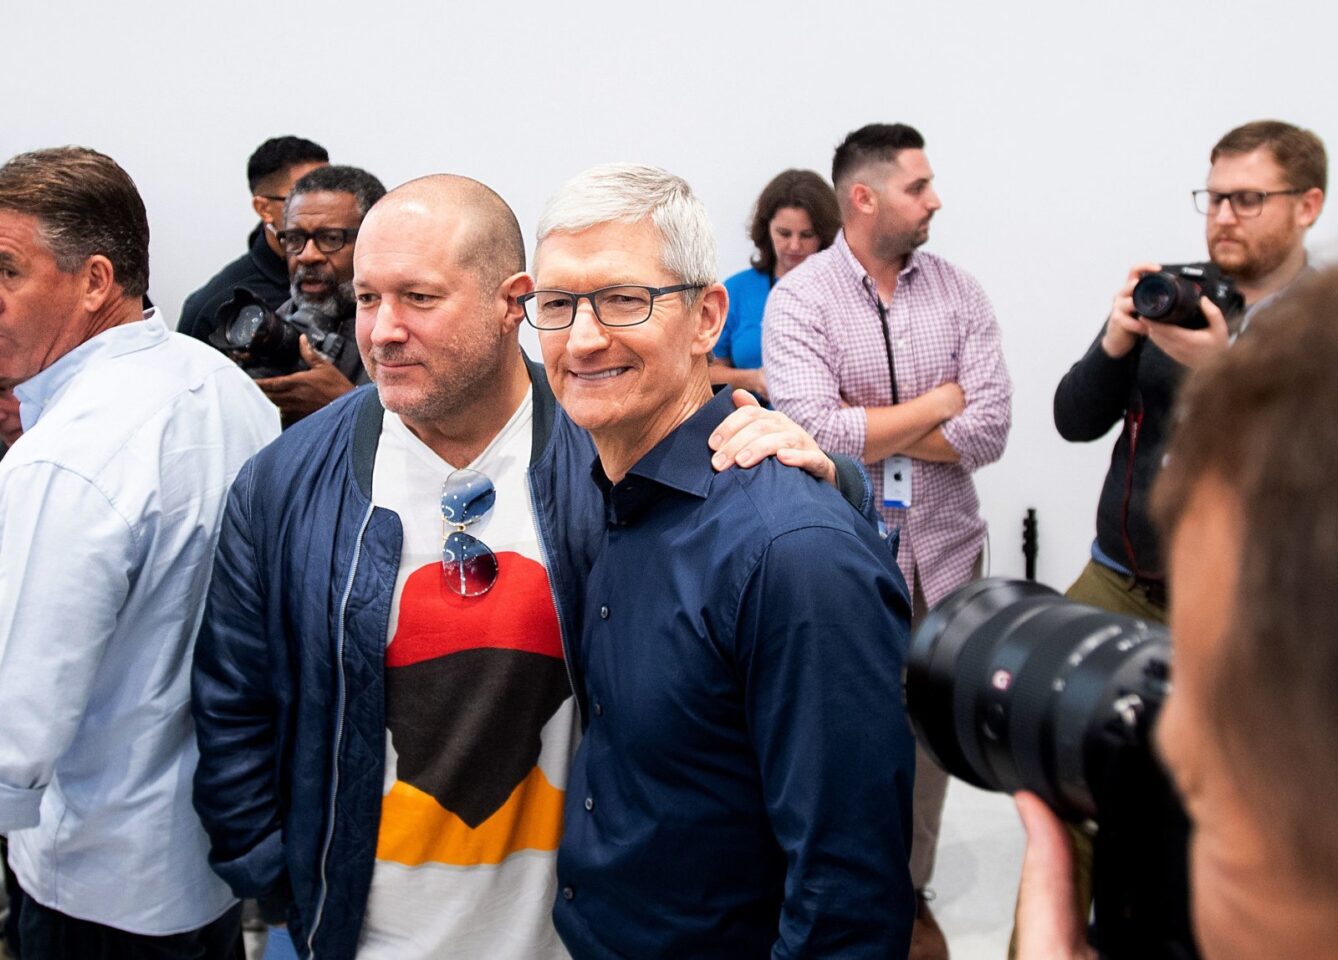 Джоні Айв розриває контракт Apple після 30-річної співпраці